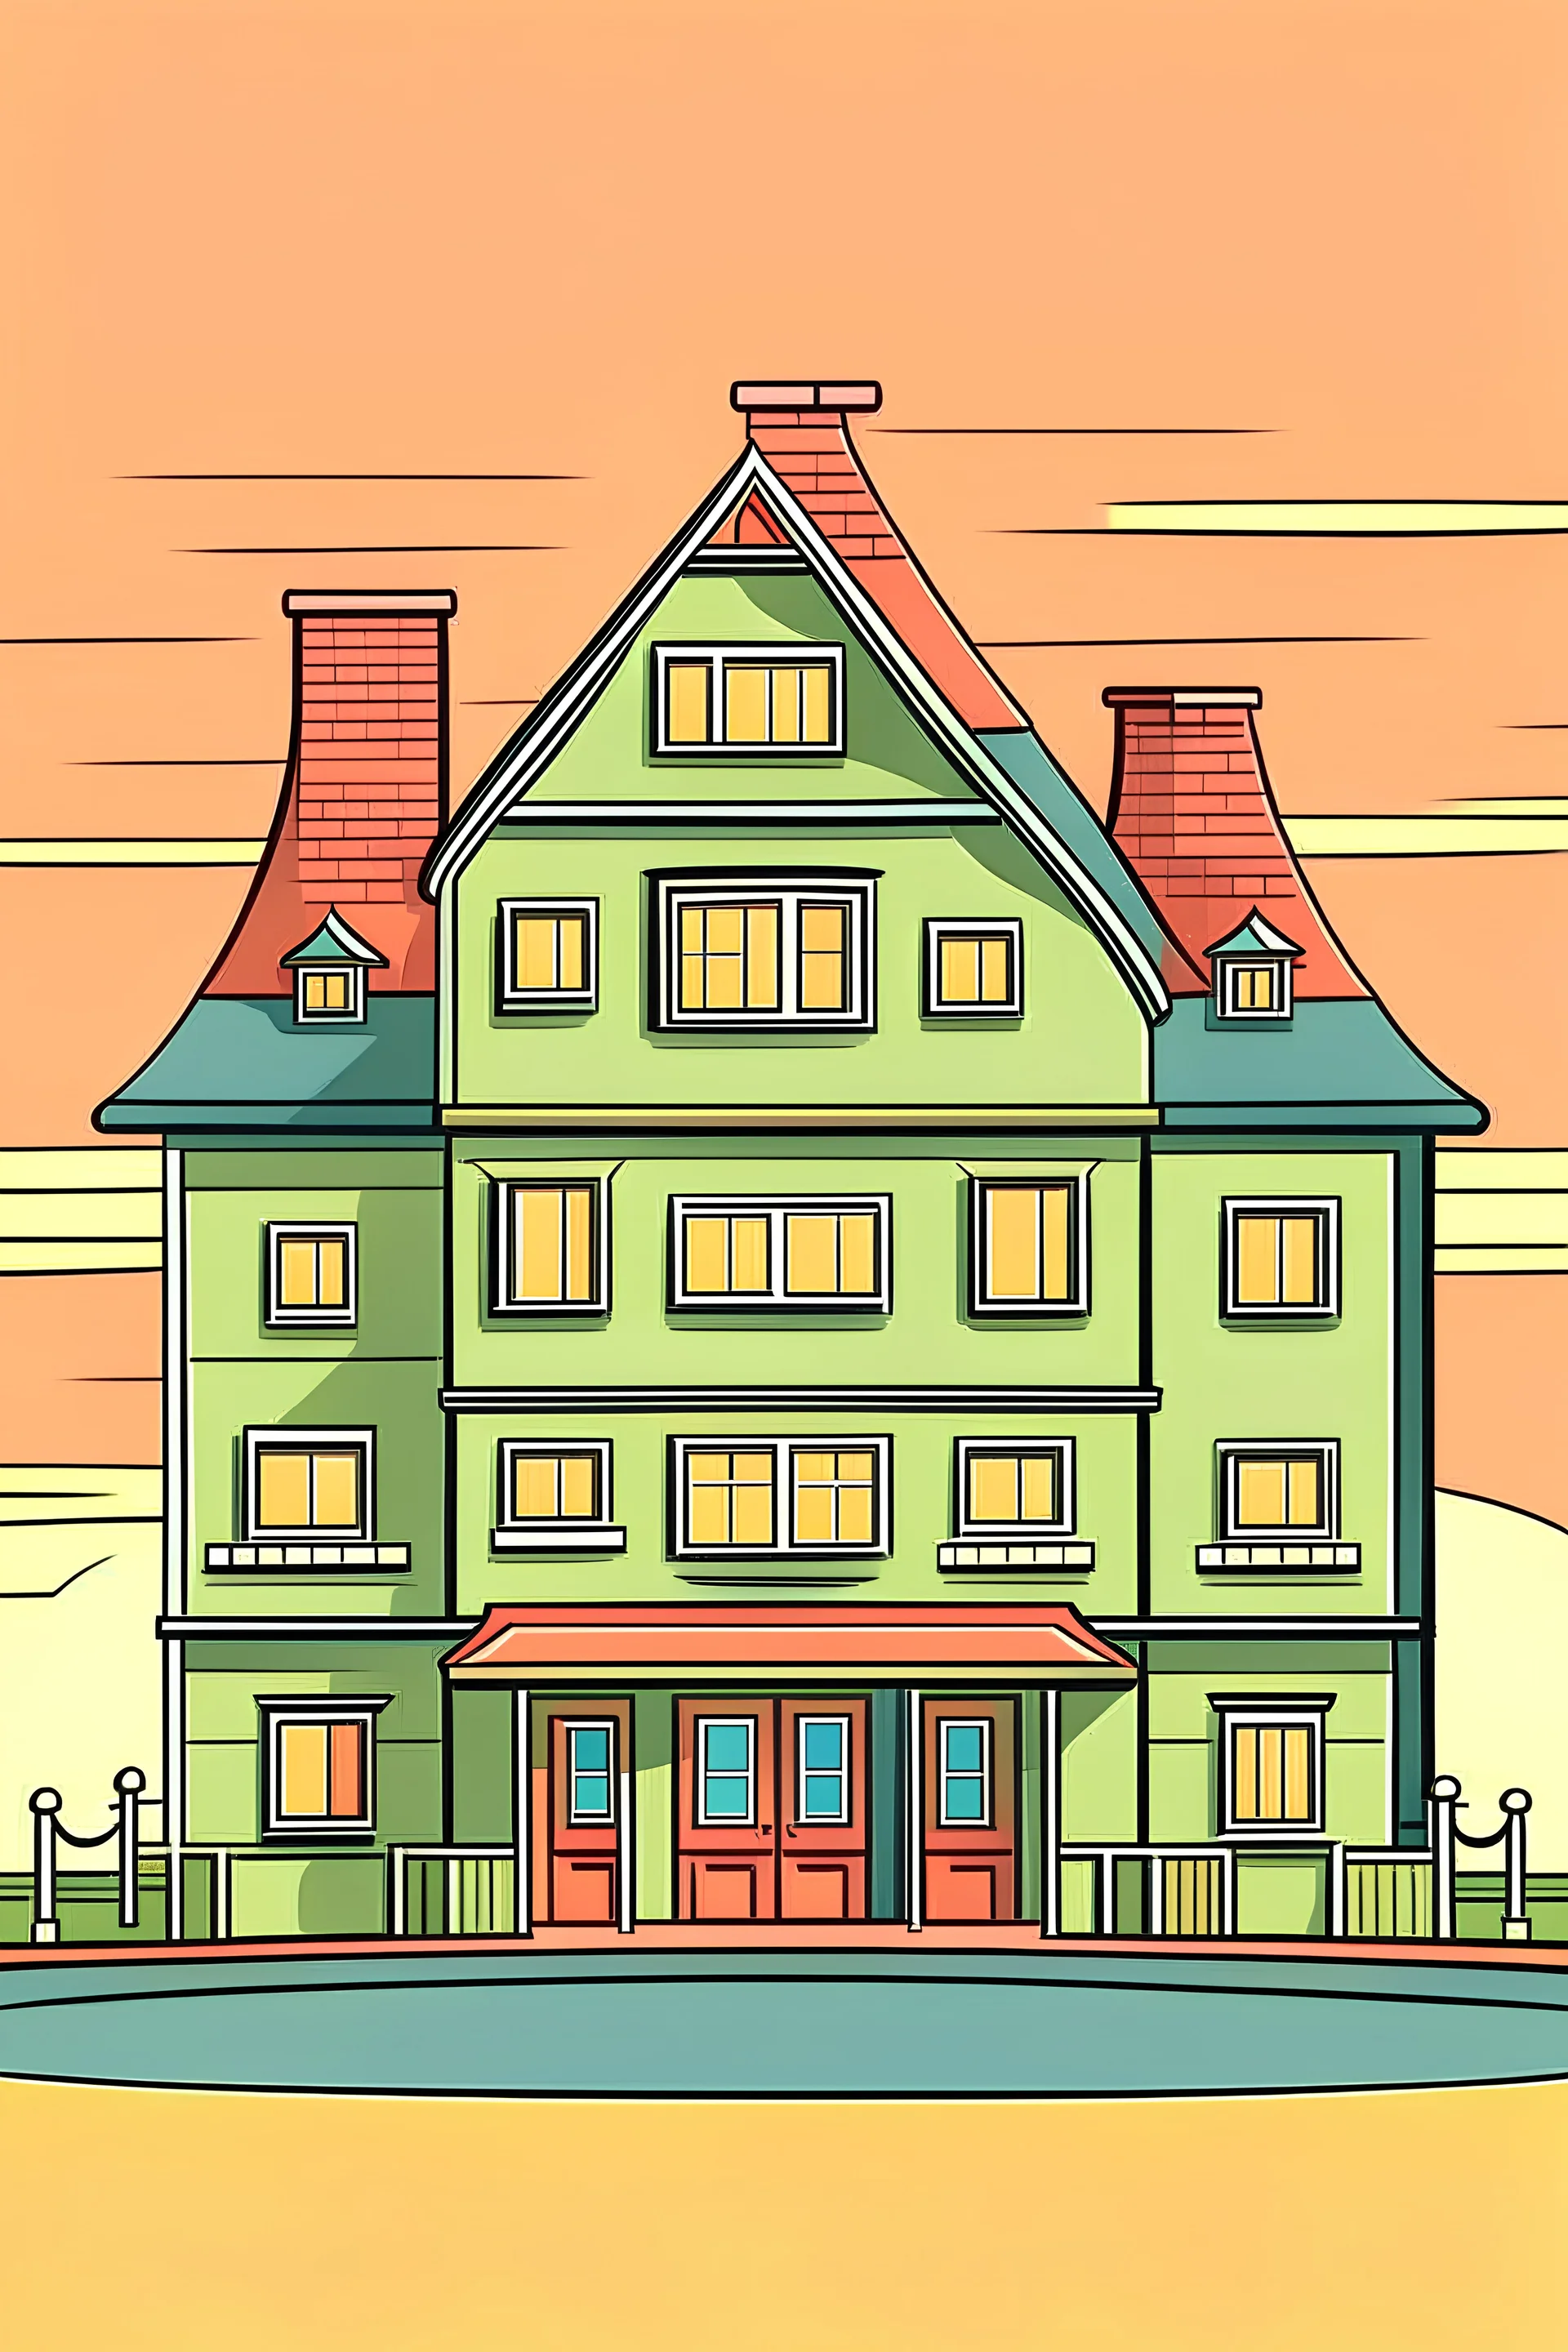 buatkan saya gambar kartun bentuk rumah dengan kumpulan dari bangun datar